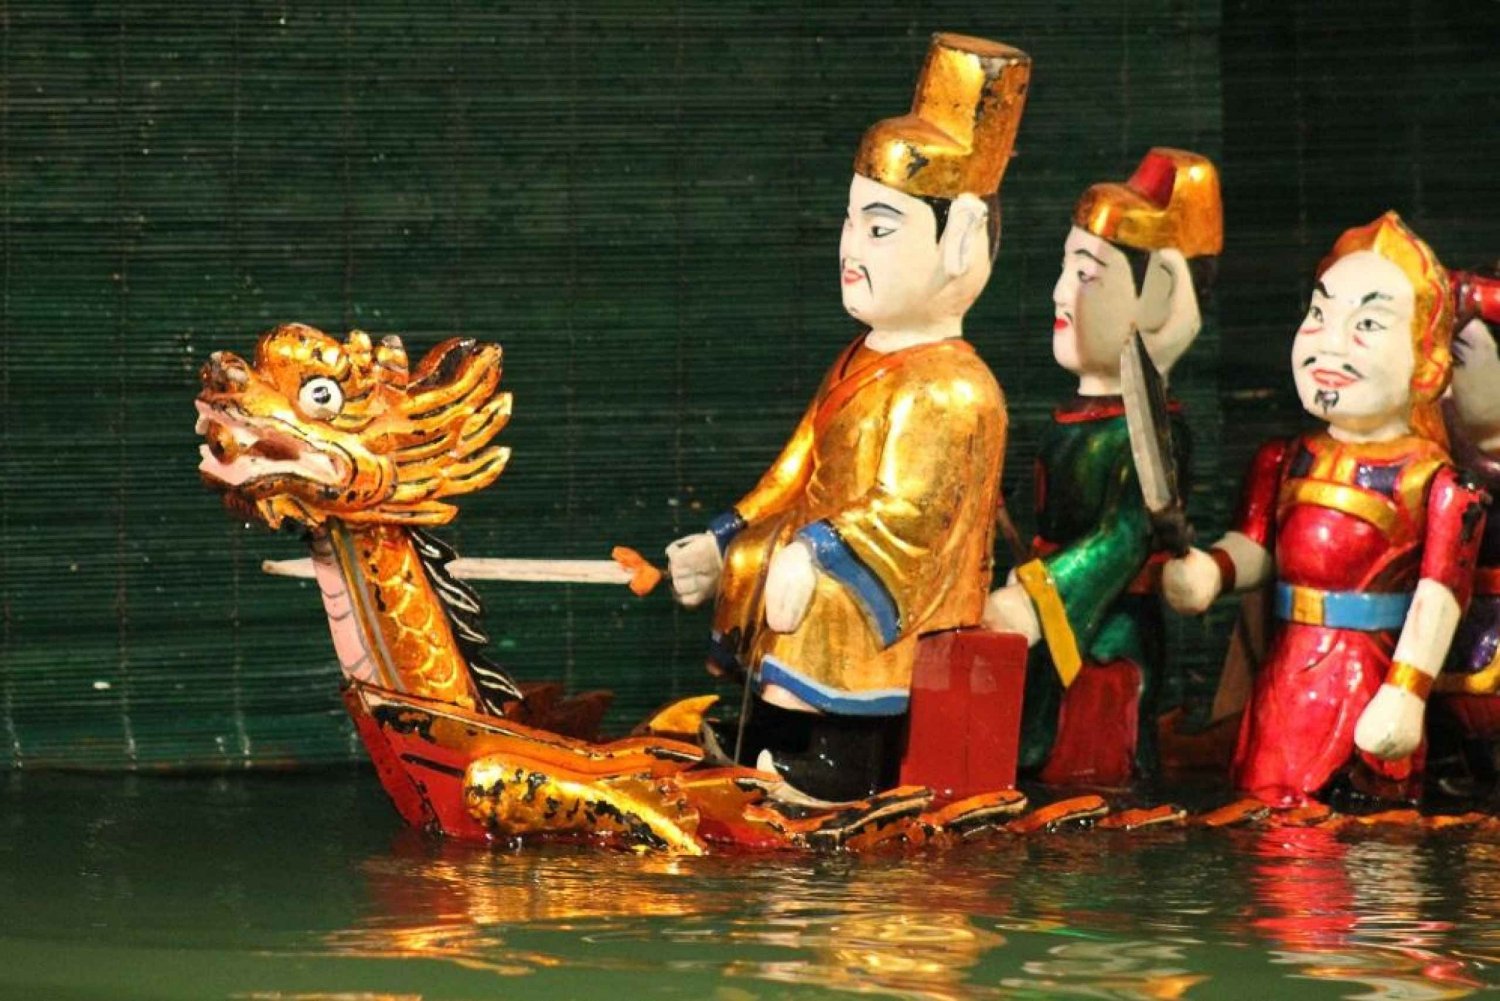 Hanoi: Biglietti per lo spettacolo delle marionette sull'acqua